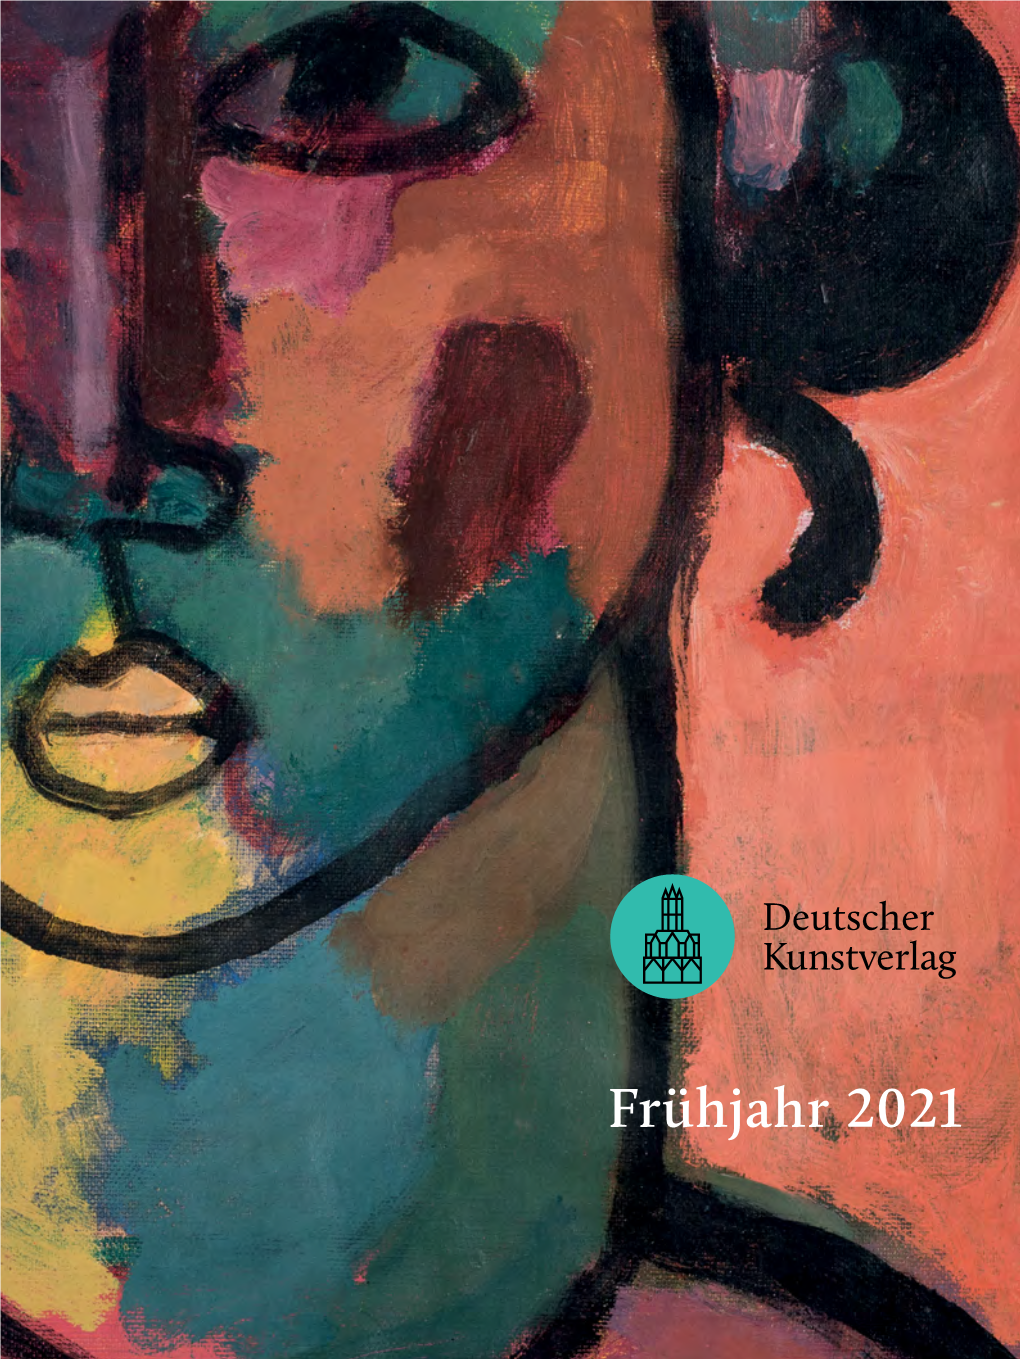 Frühjahr 2021 Liebe Freundinnen Und Freunde Des Deutschen Kunstverlags, Liebe Leserinnen Und Leser, Wussten Sie, Dass Der Deutsche Kunstverlag Im Jahr 2021 Sein 100